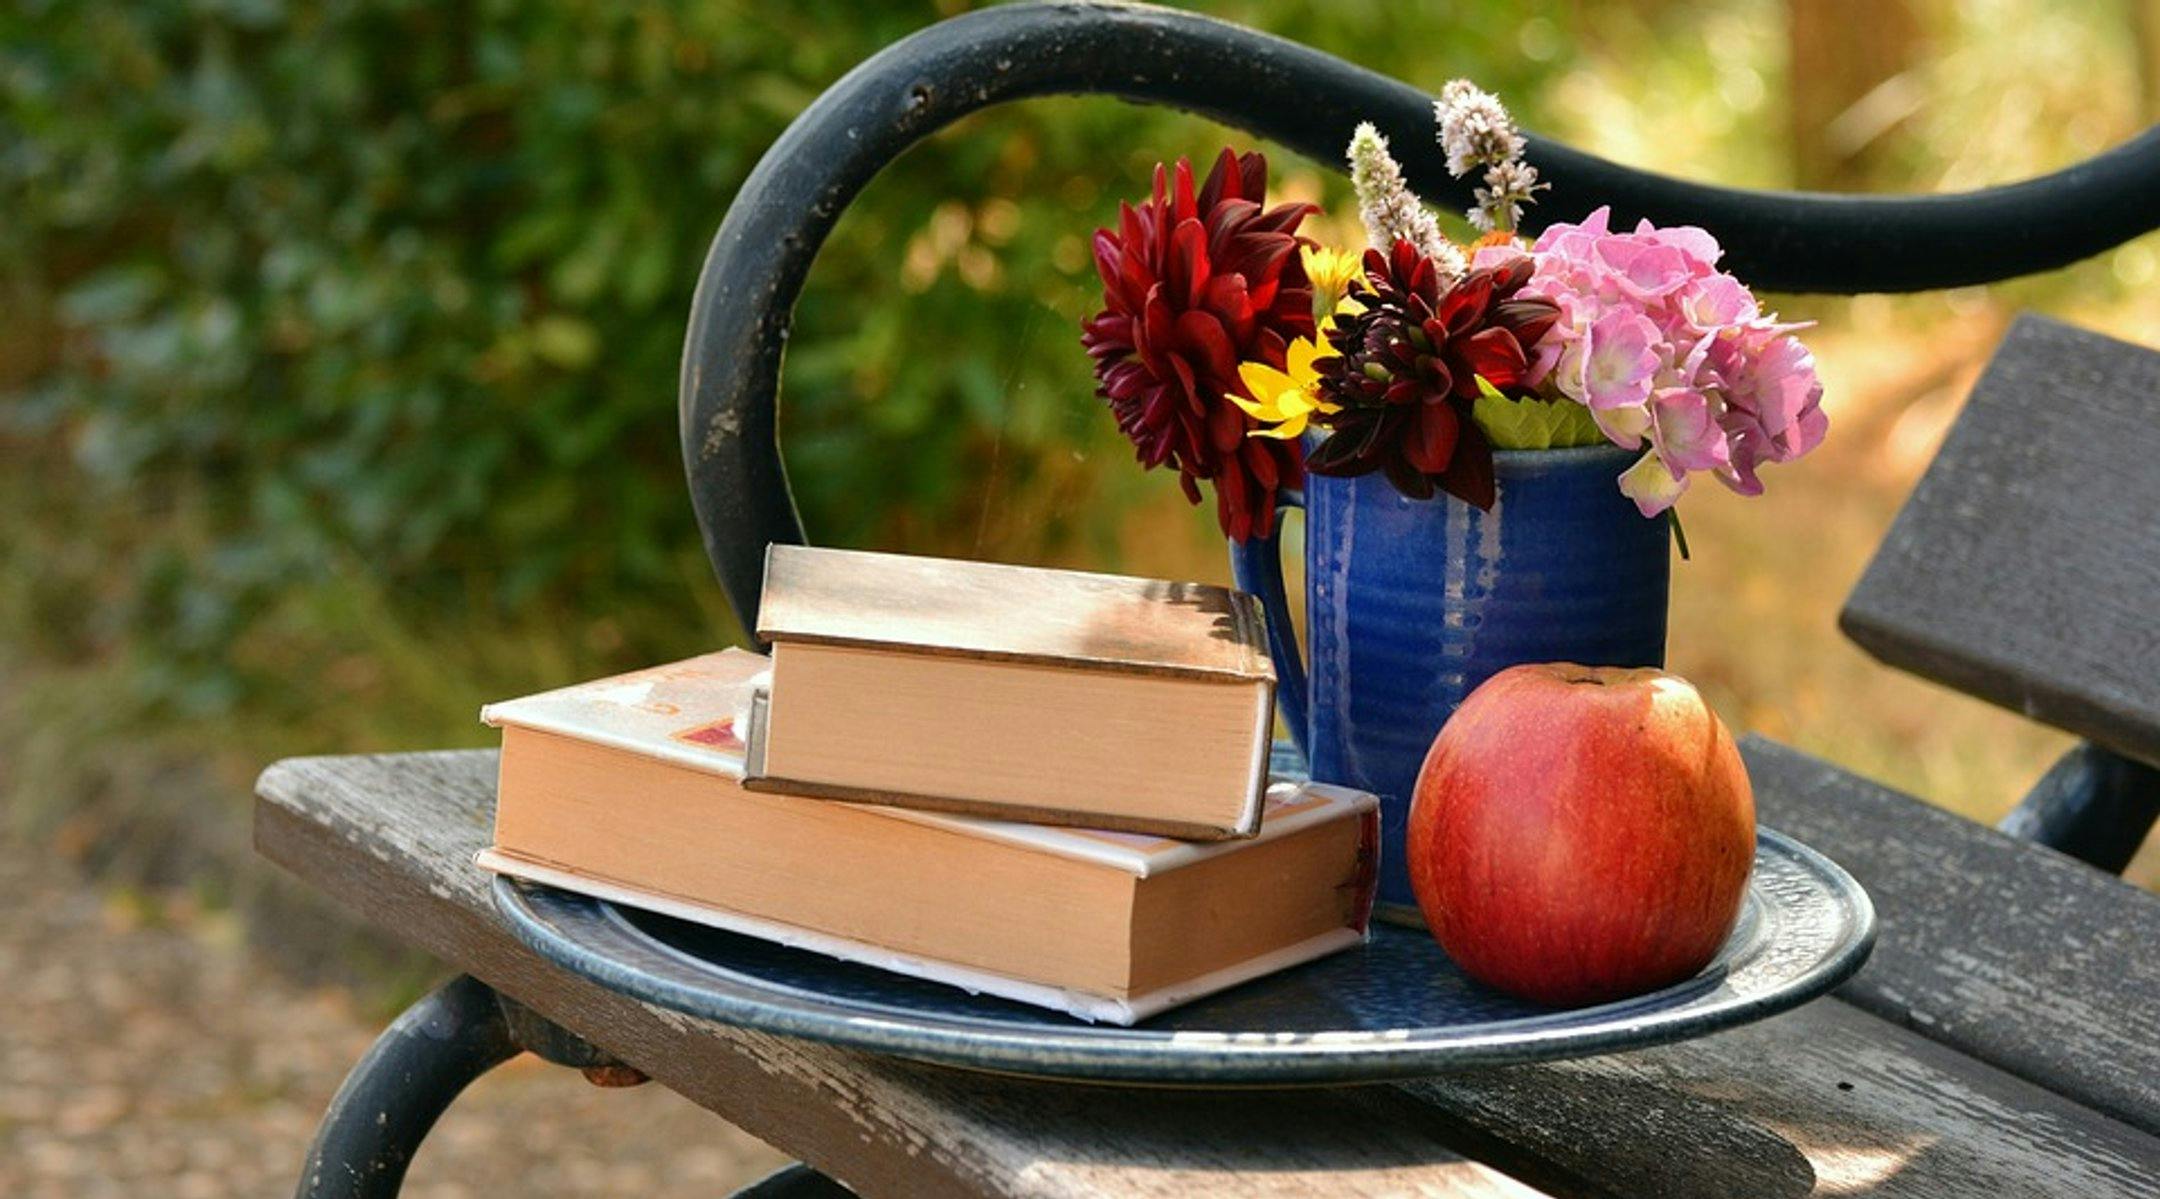 En benk med et fat oppå. På fatet ligger to bøker, et eple og blomster i et krus.